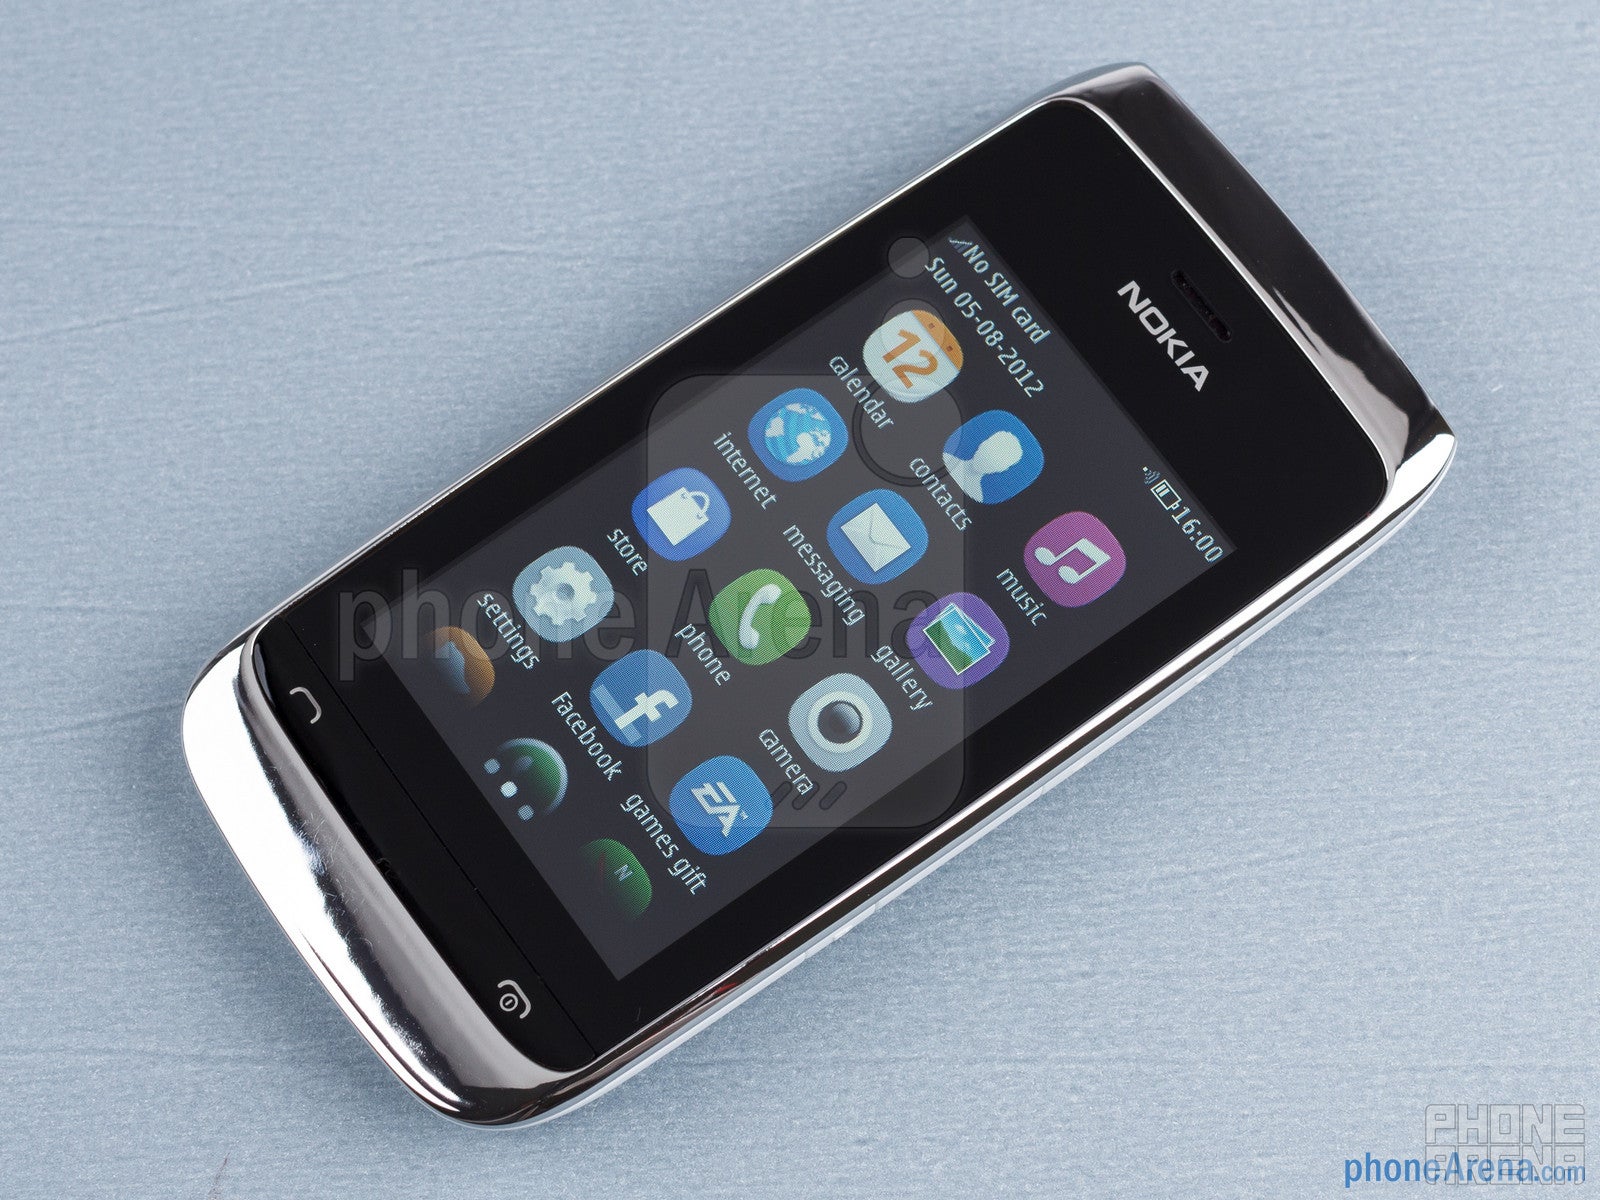 Nokia Asha 309 Review